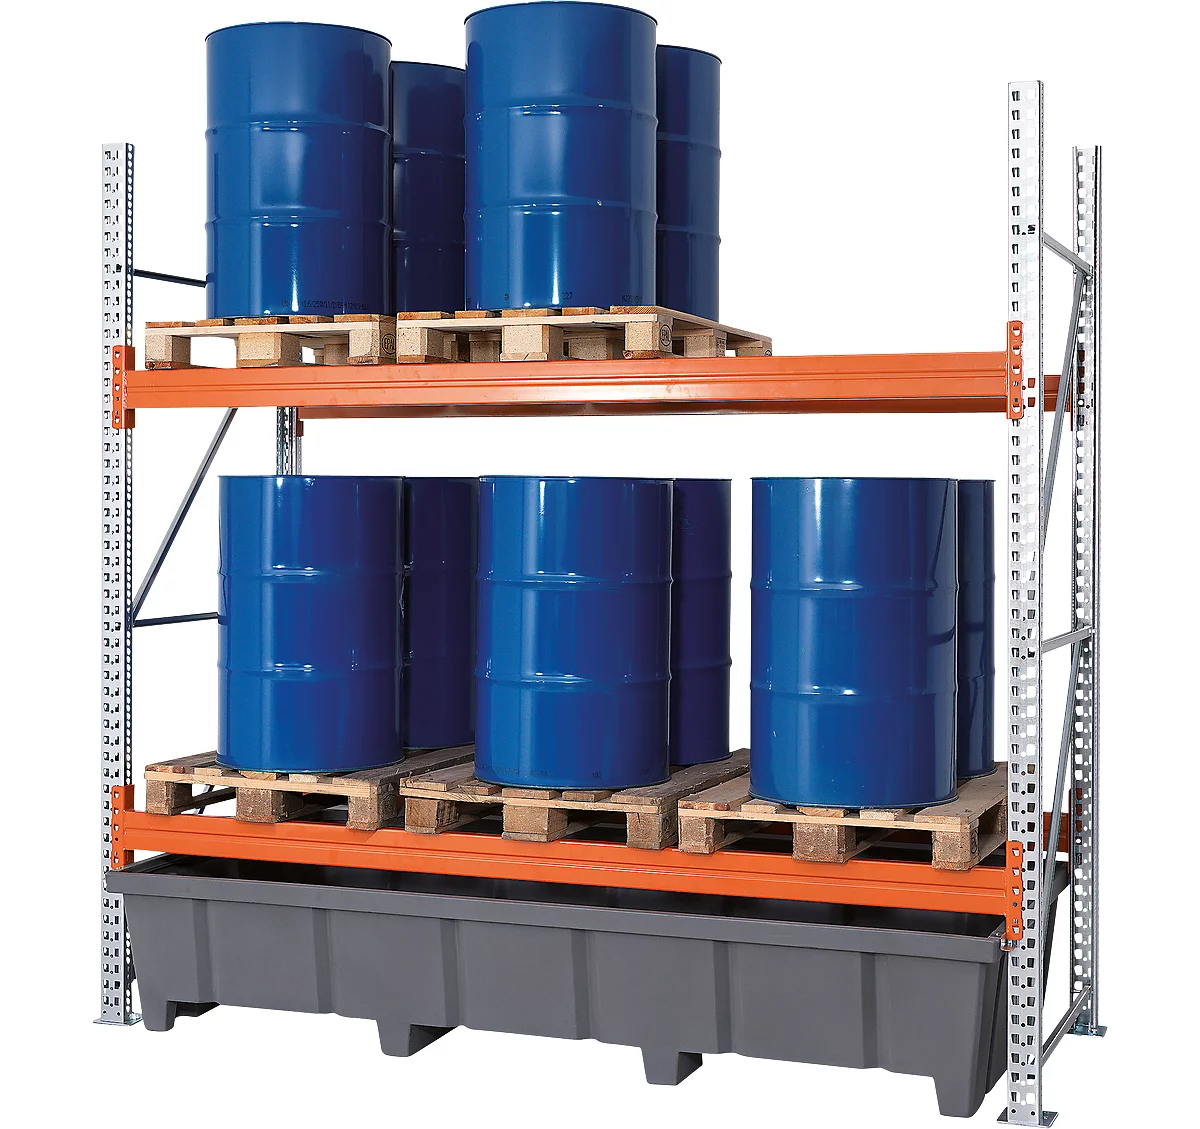 Réservoir à produits chimiques, en polyéthylène (PE), 3000 litres